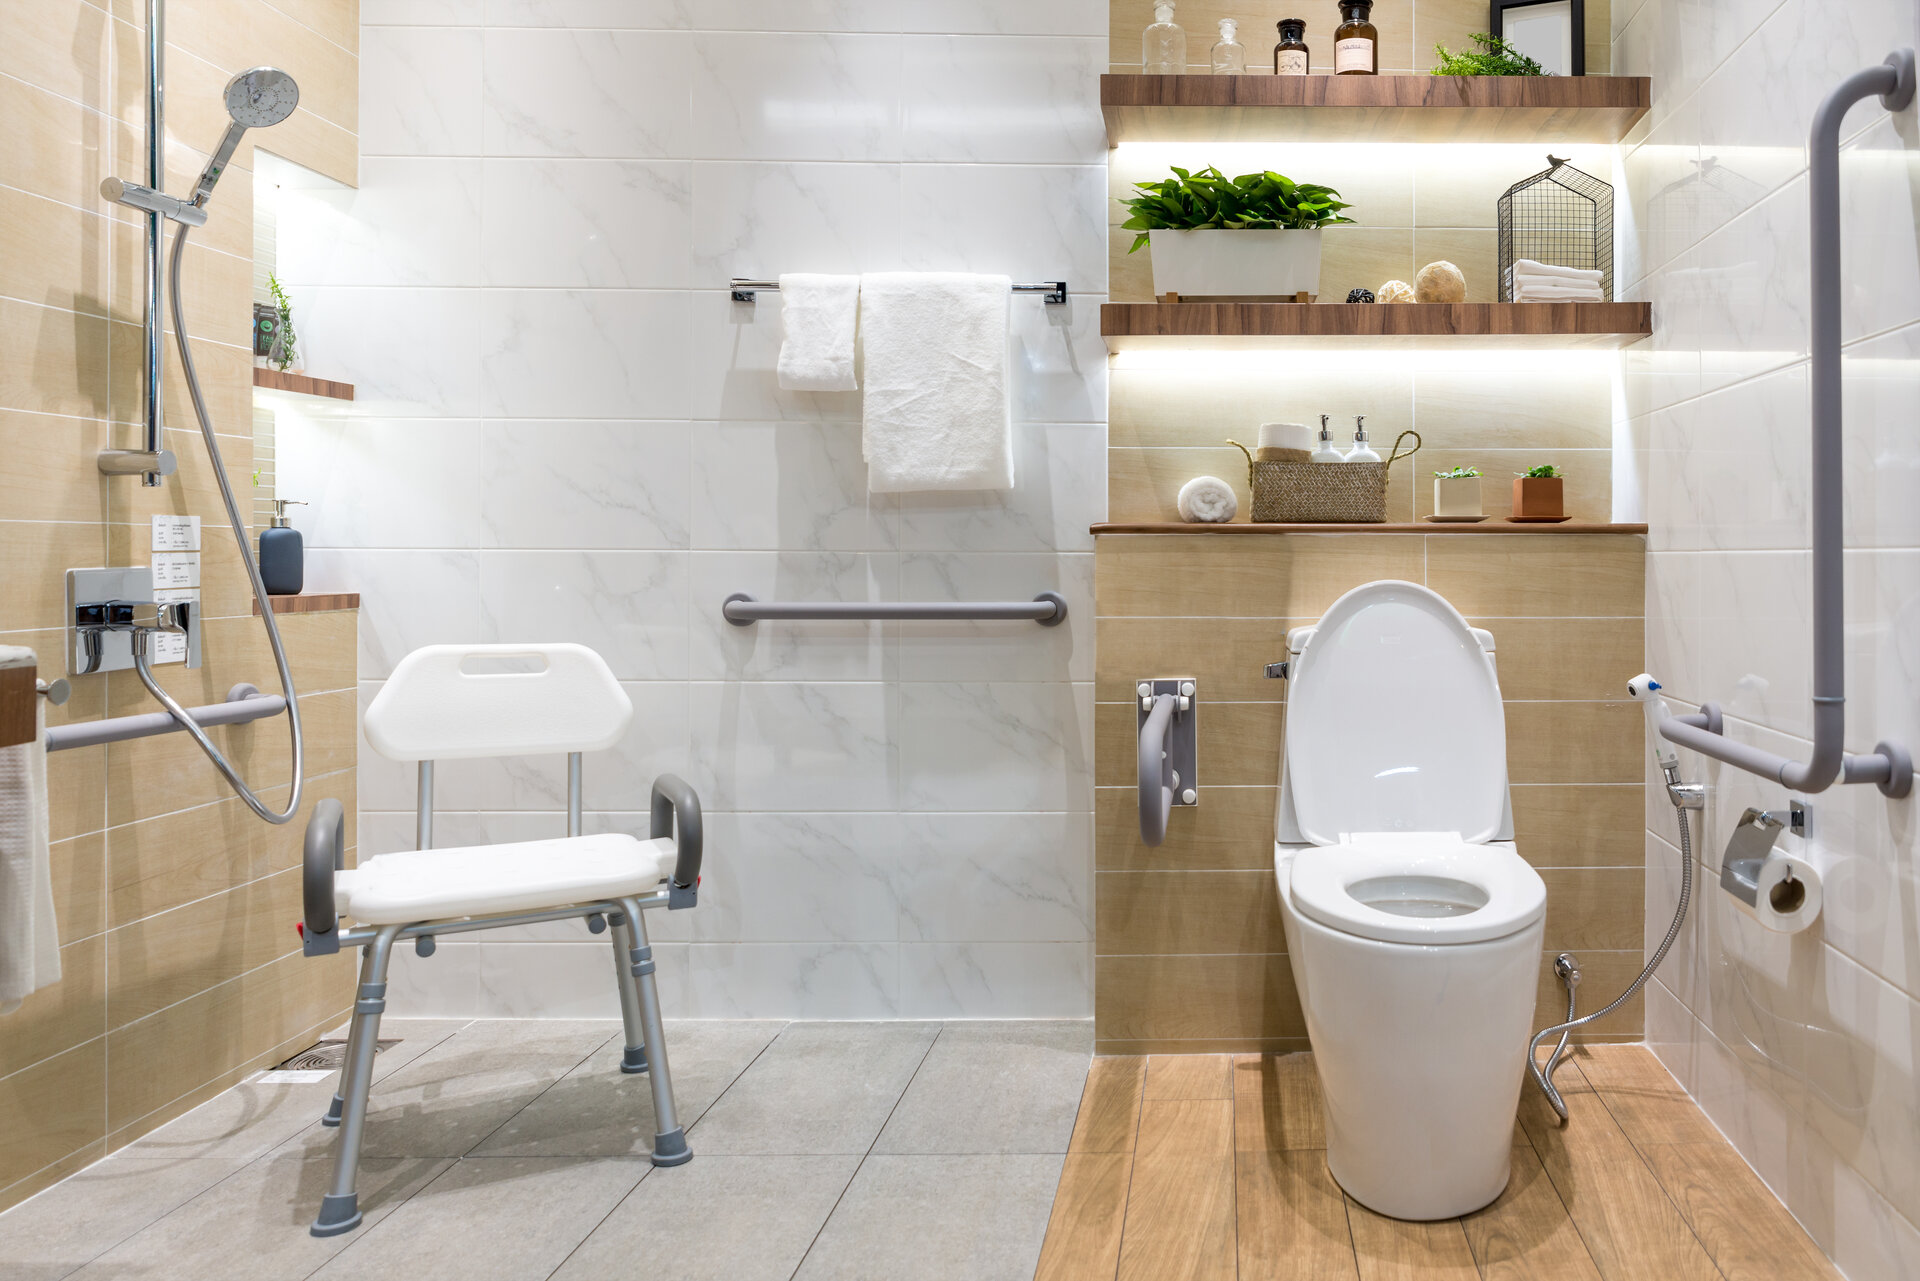 Seniorengerechtes Badezimmer: Diese Sanitärprodukte und Tipps helfen Ihnen